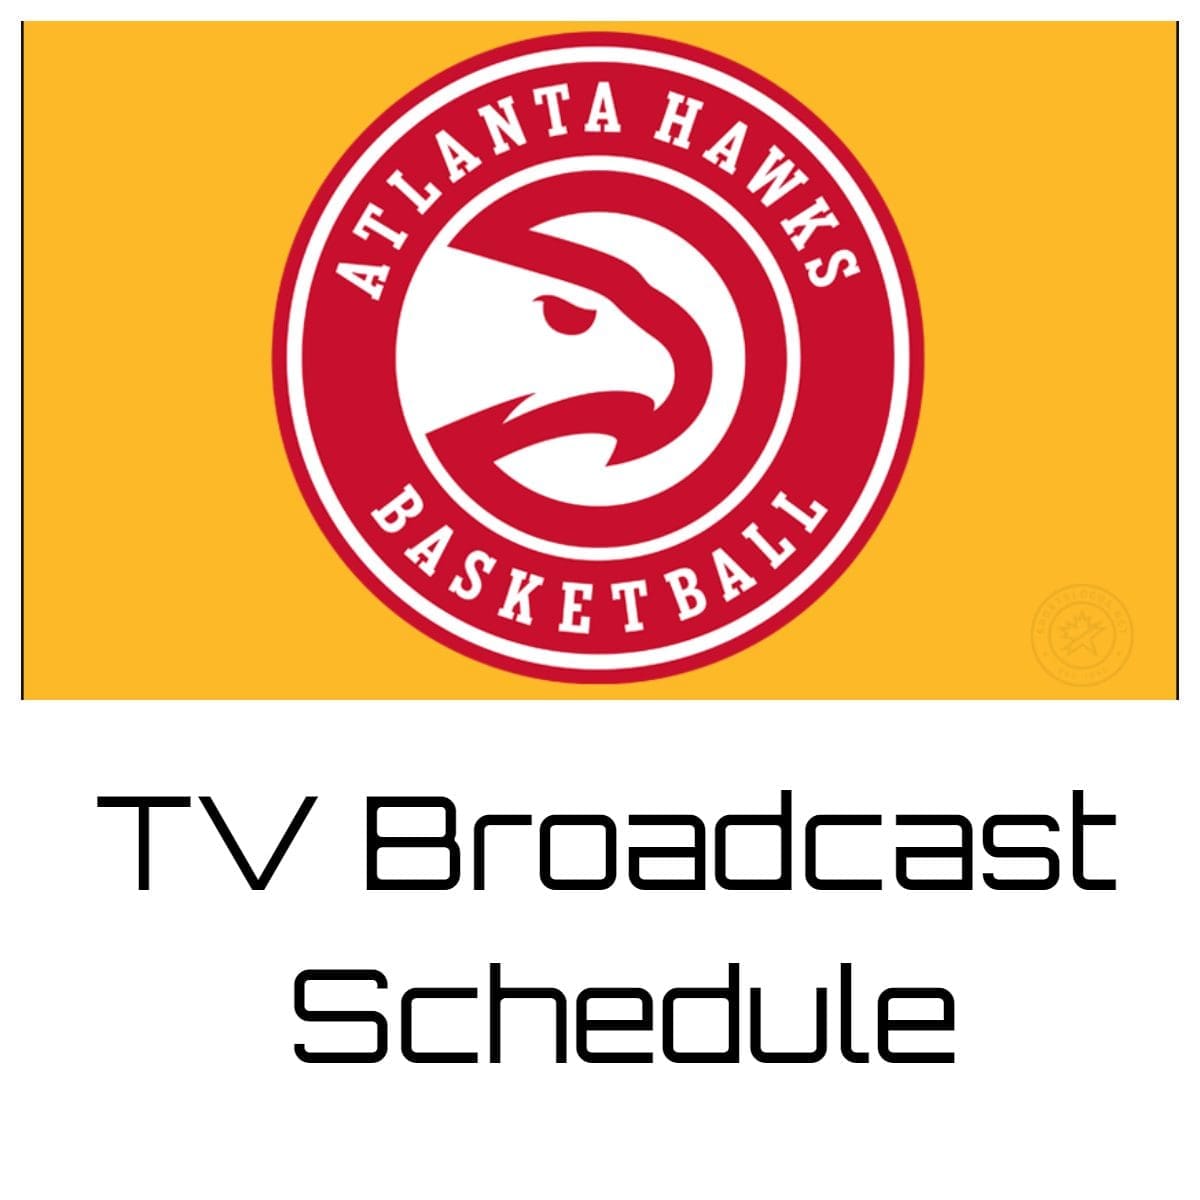 Atlanta Hawks TV Broadcast Schedule